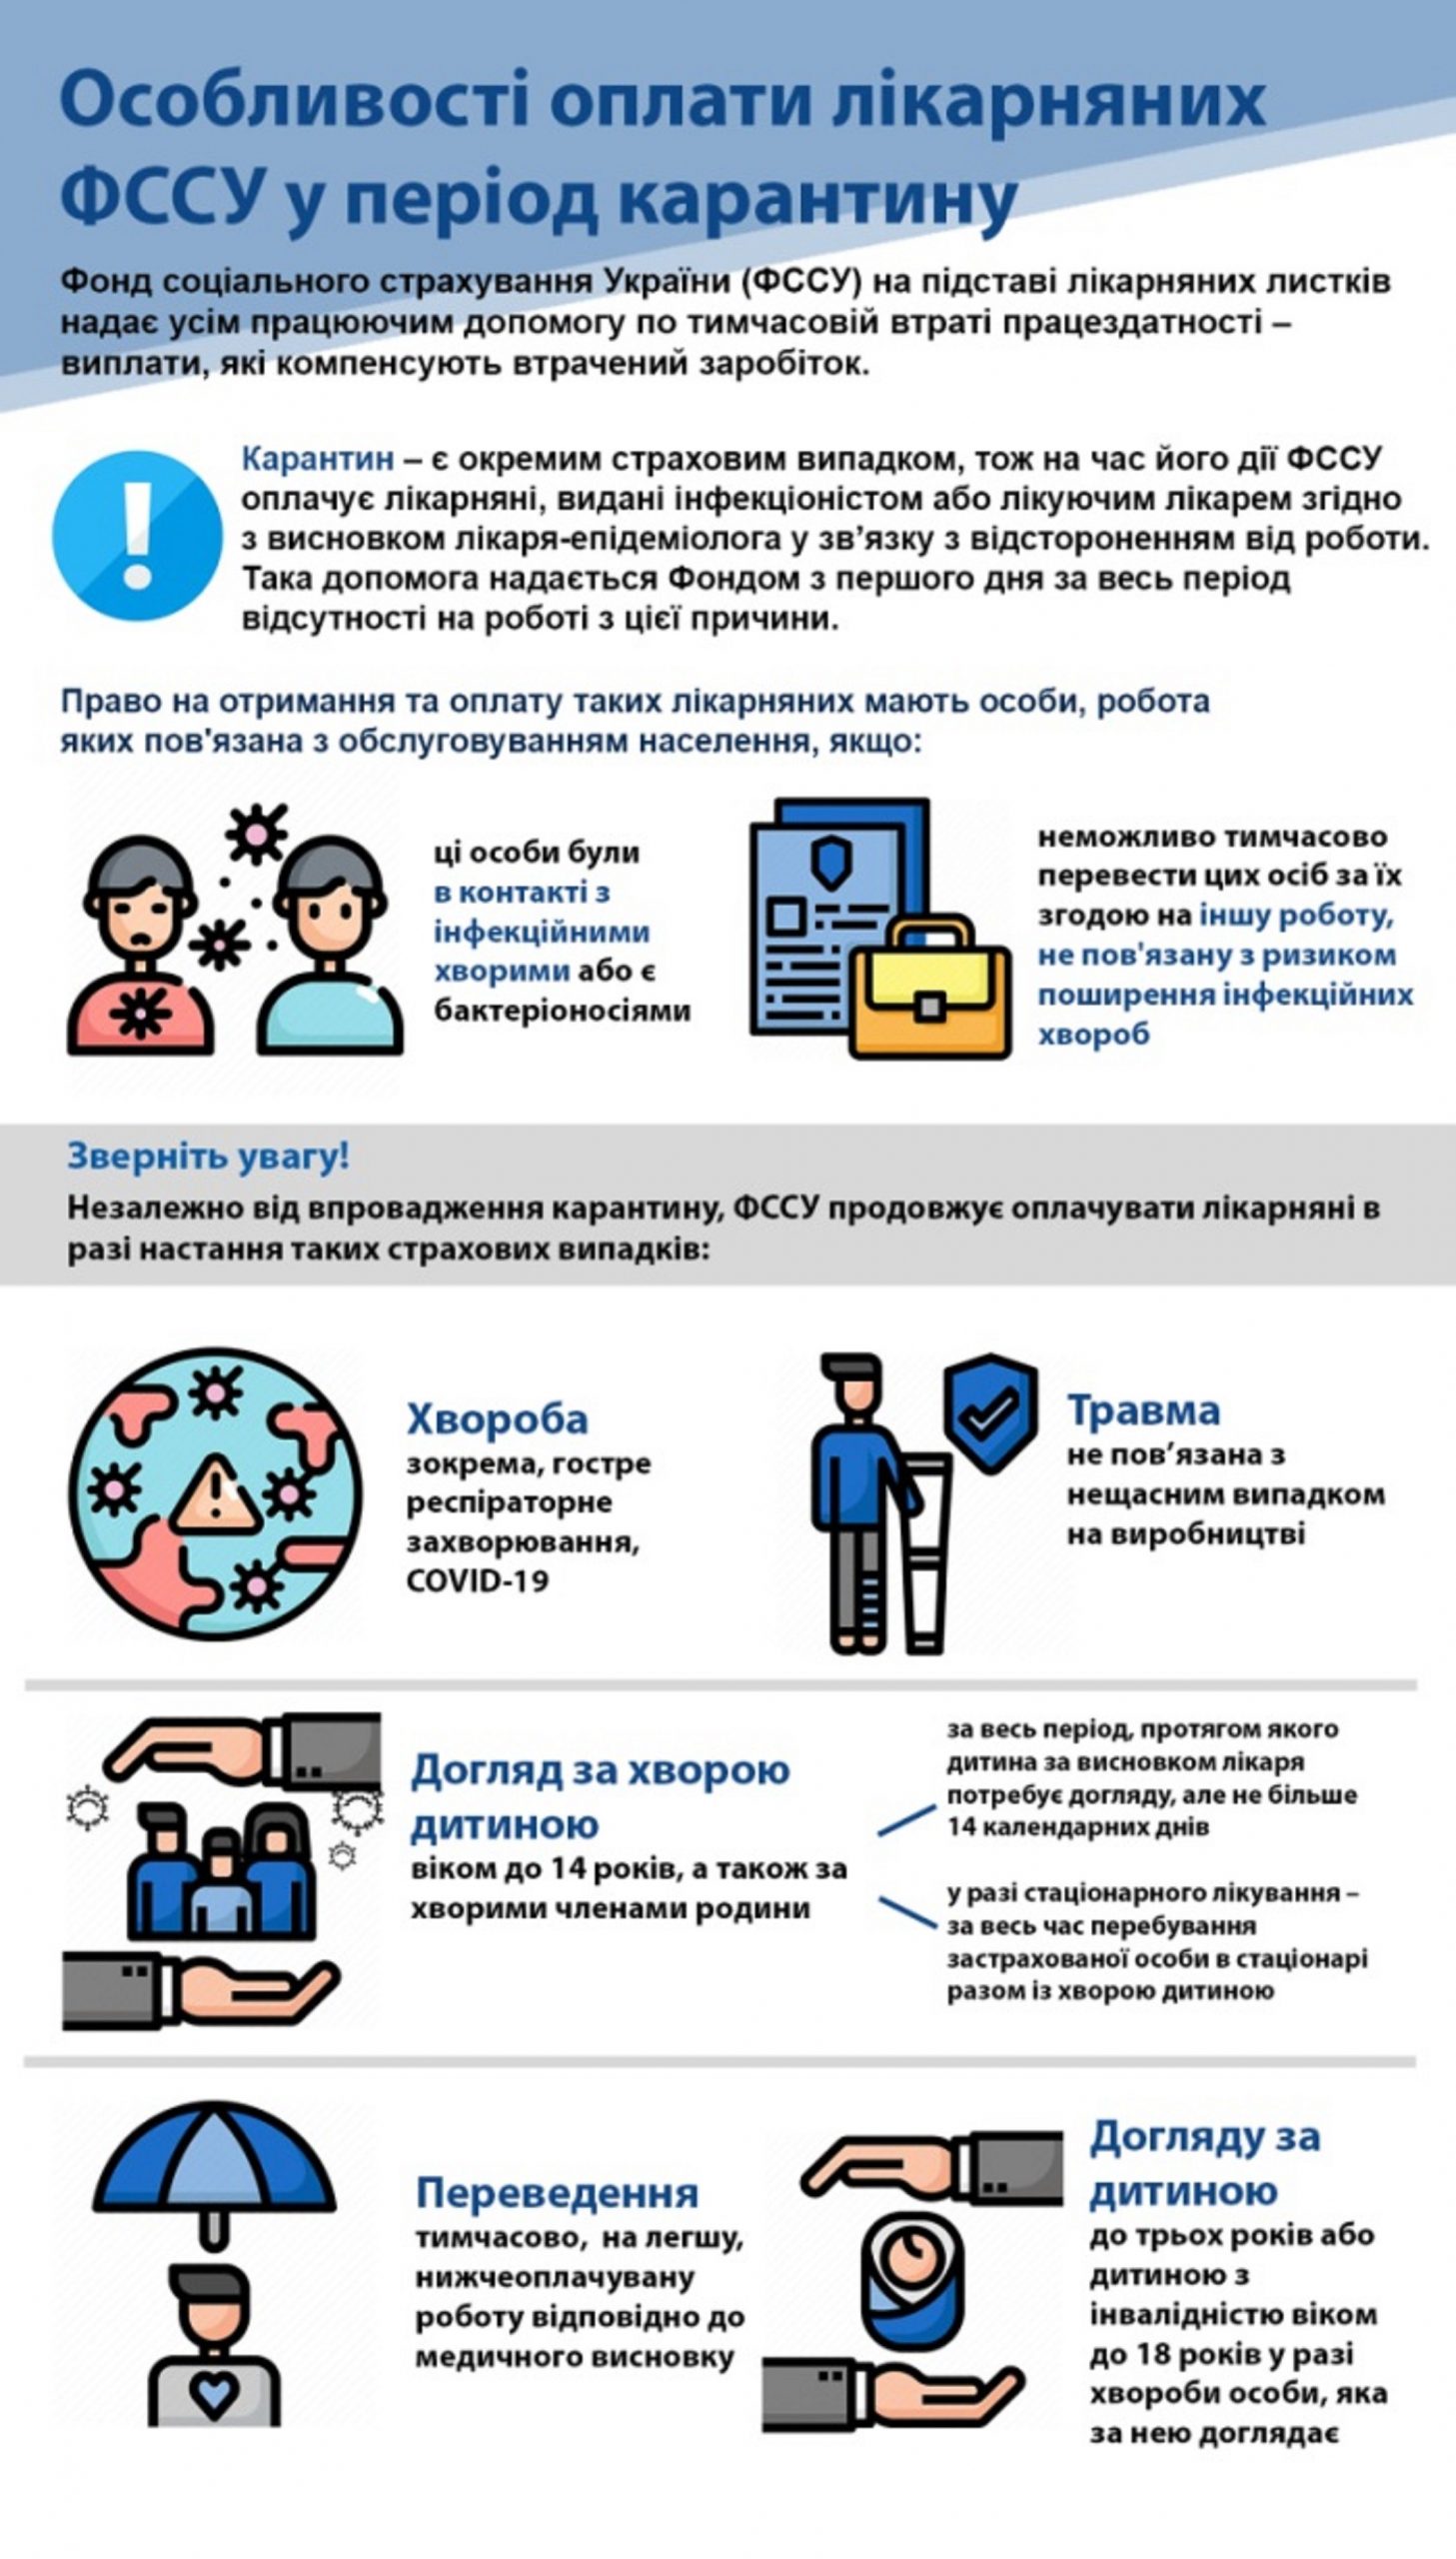 Как получить больничный во время карантина - украинцам дали важные советы - фото 1